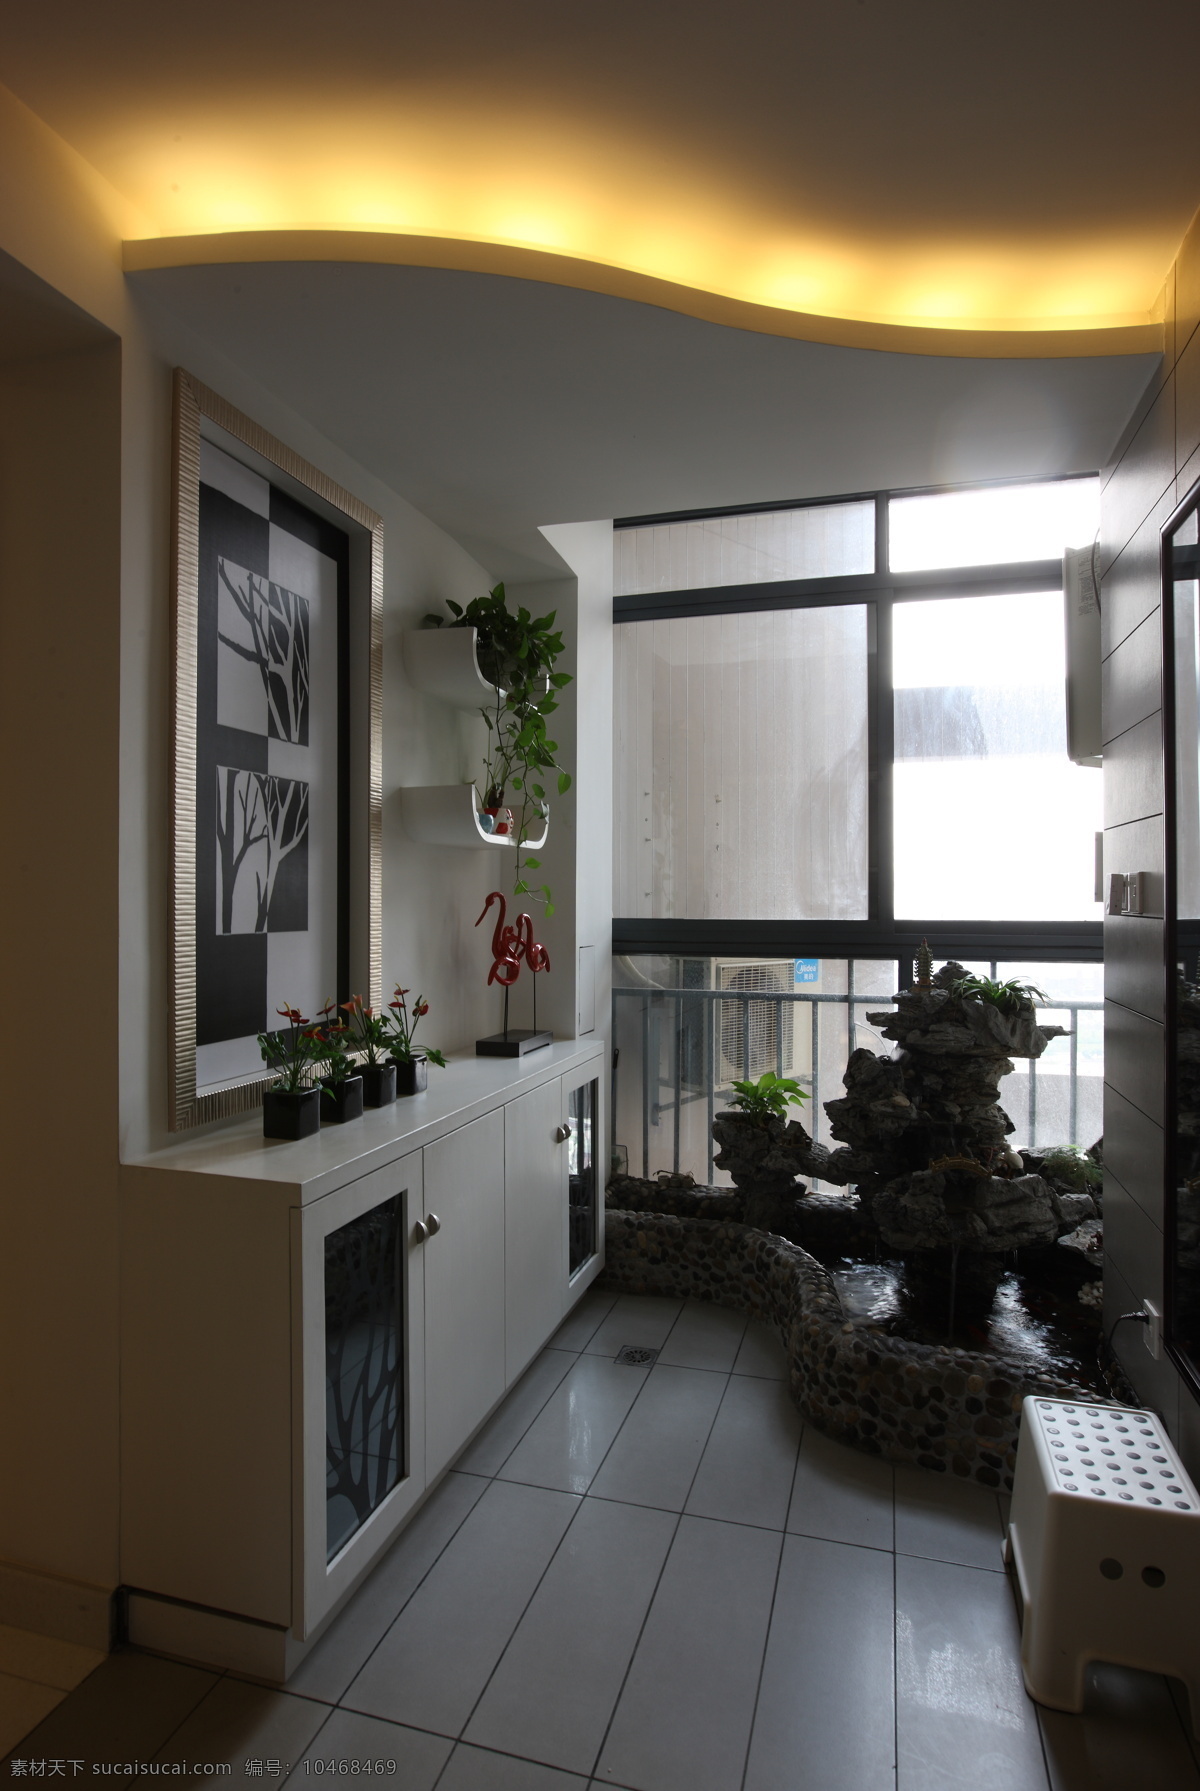 简洁 大厅 3d 效果图 室内 3d渲染图 简洁的大厅 高清 渲染 图 家居装饰素材 室内设计